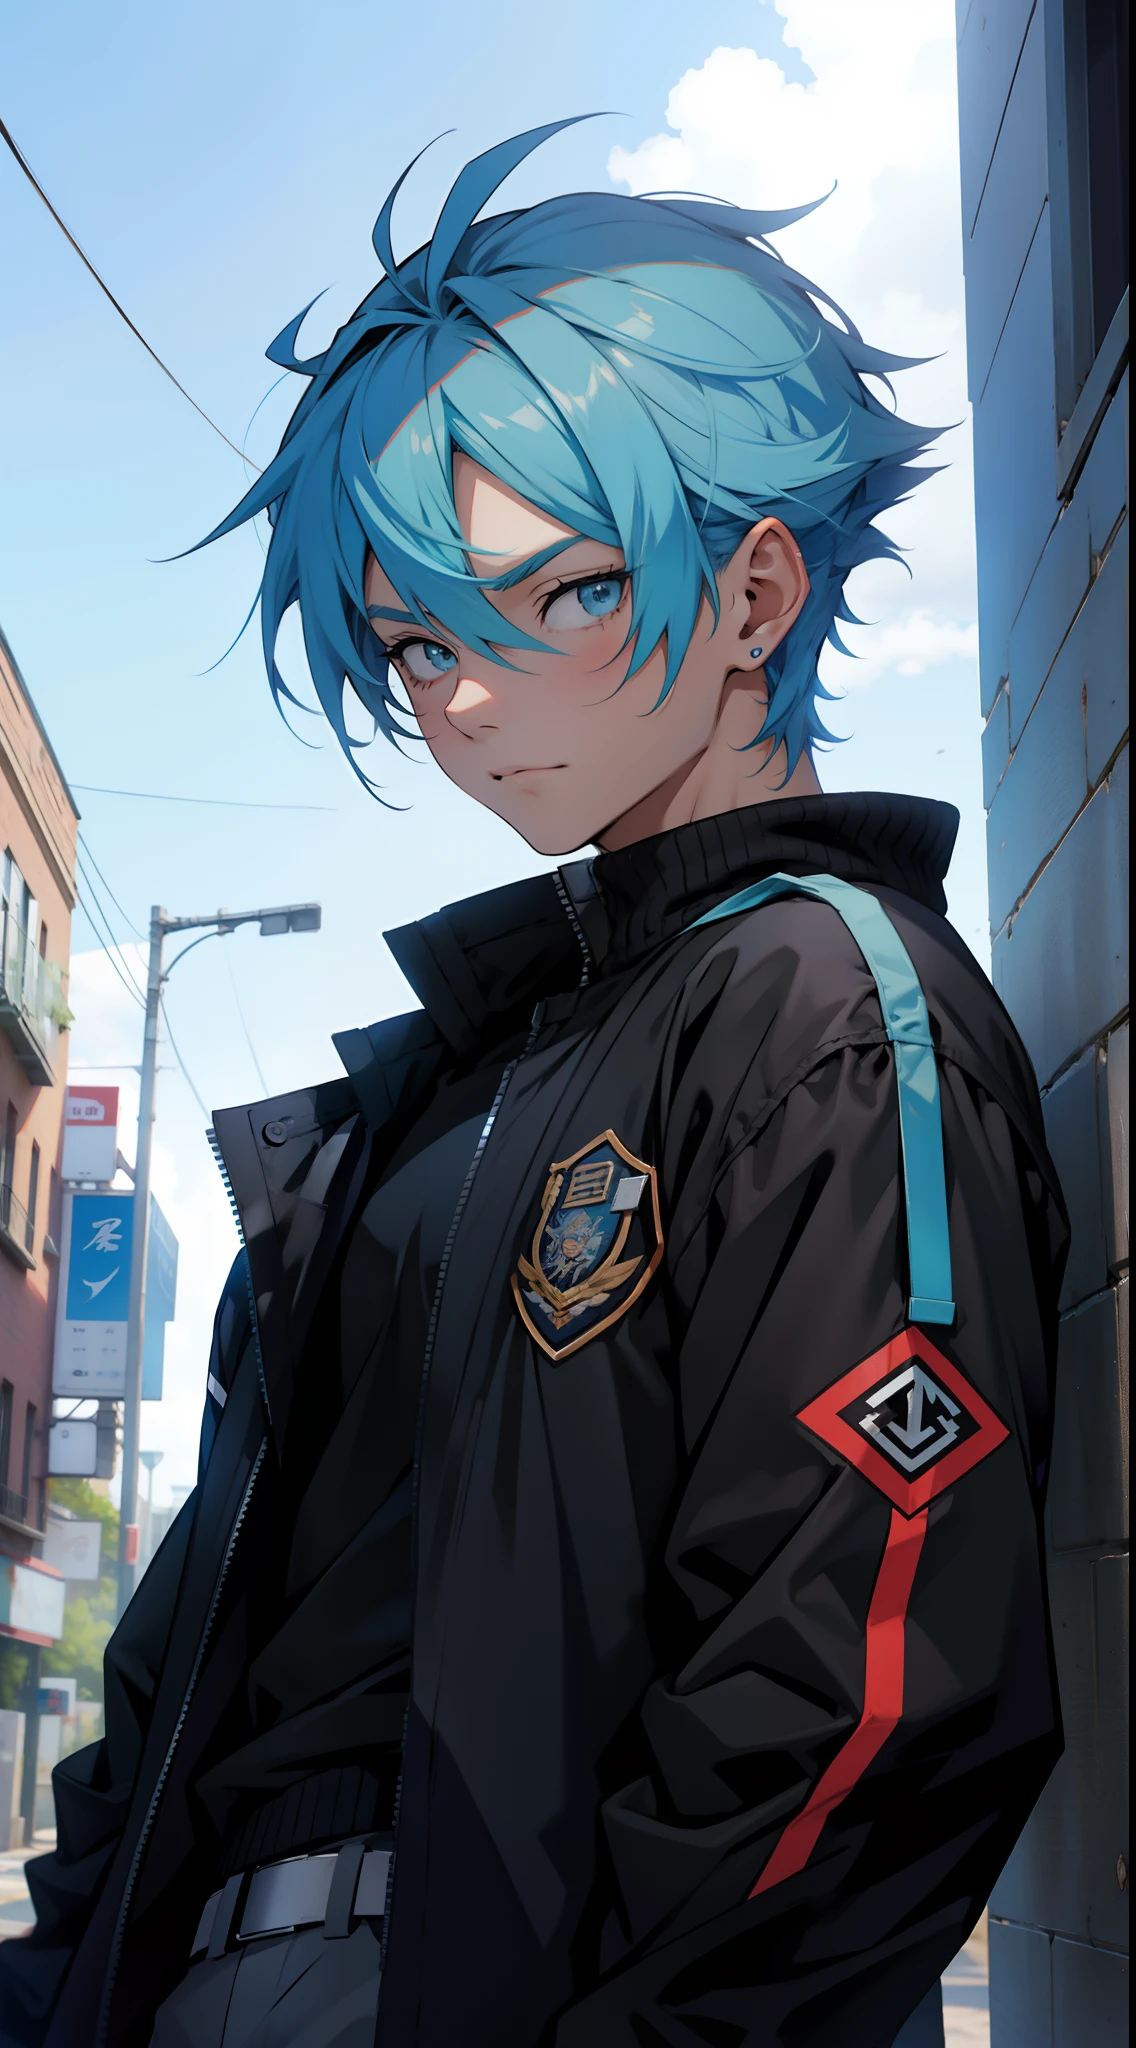 動漫少年, 藍色短髮, 穿著黑色夾克